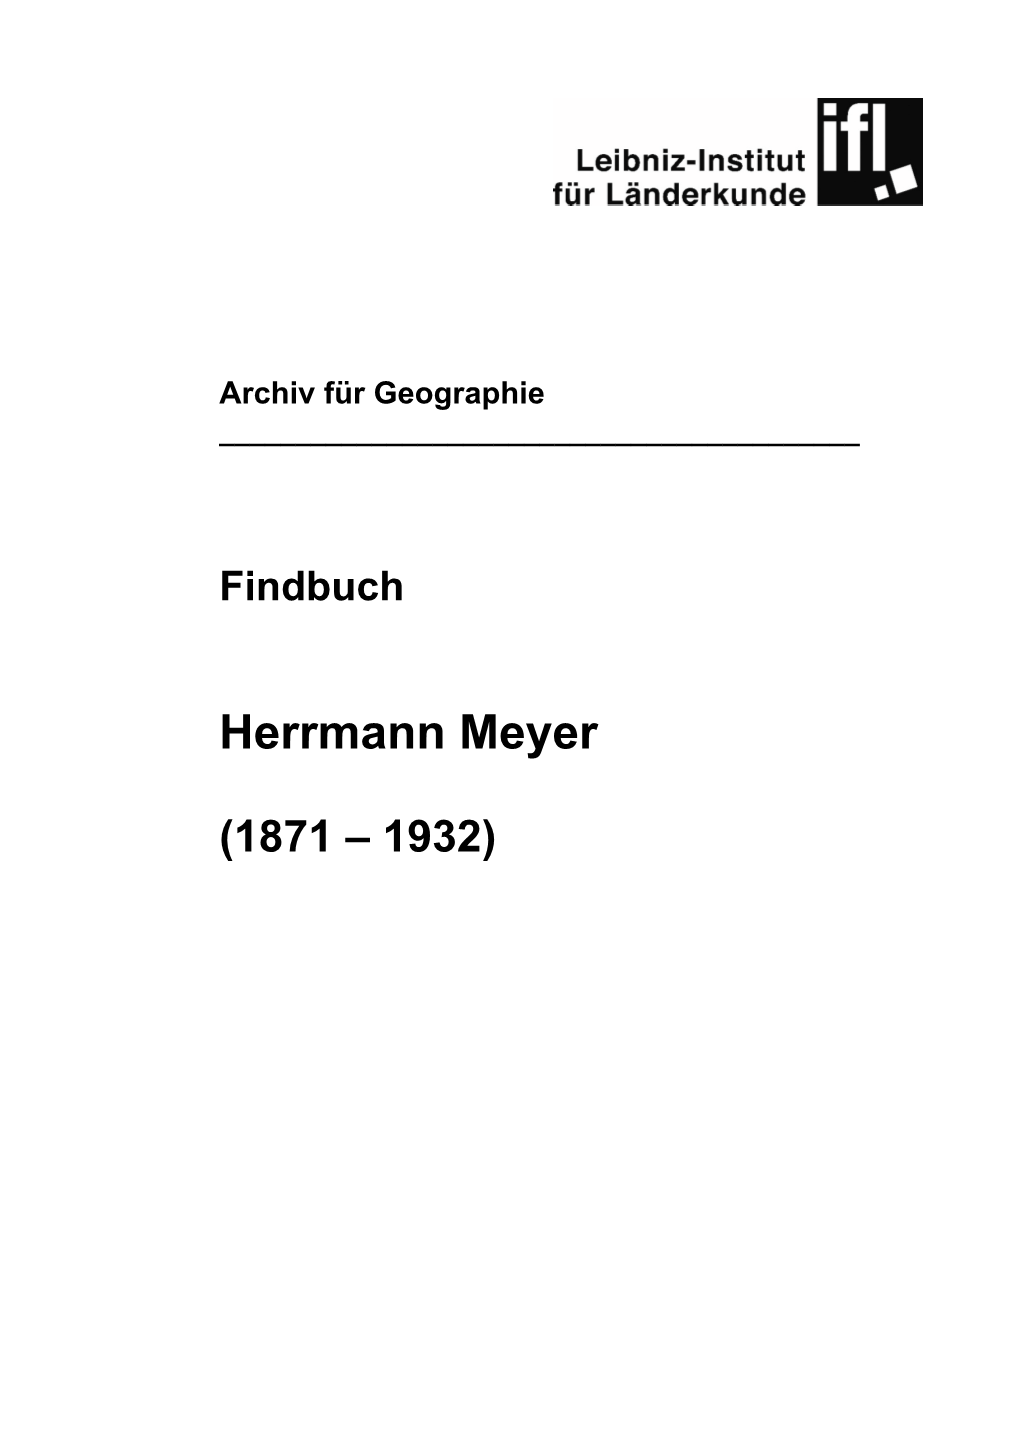 Findbuch Herrmann Meyer